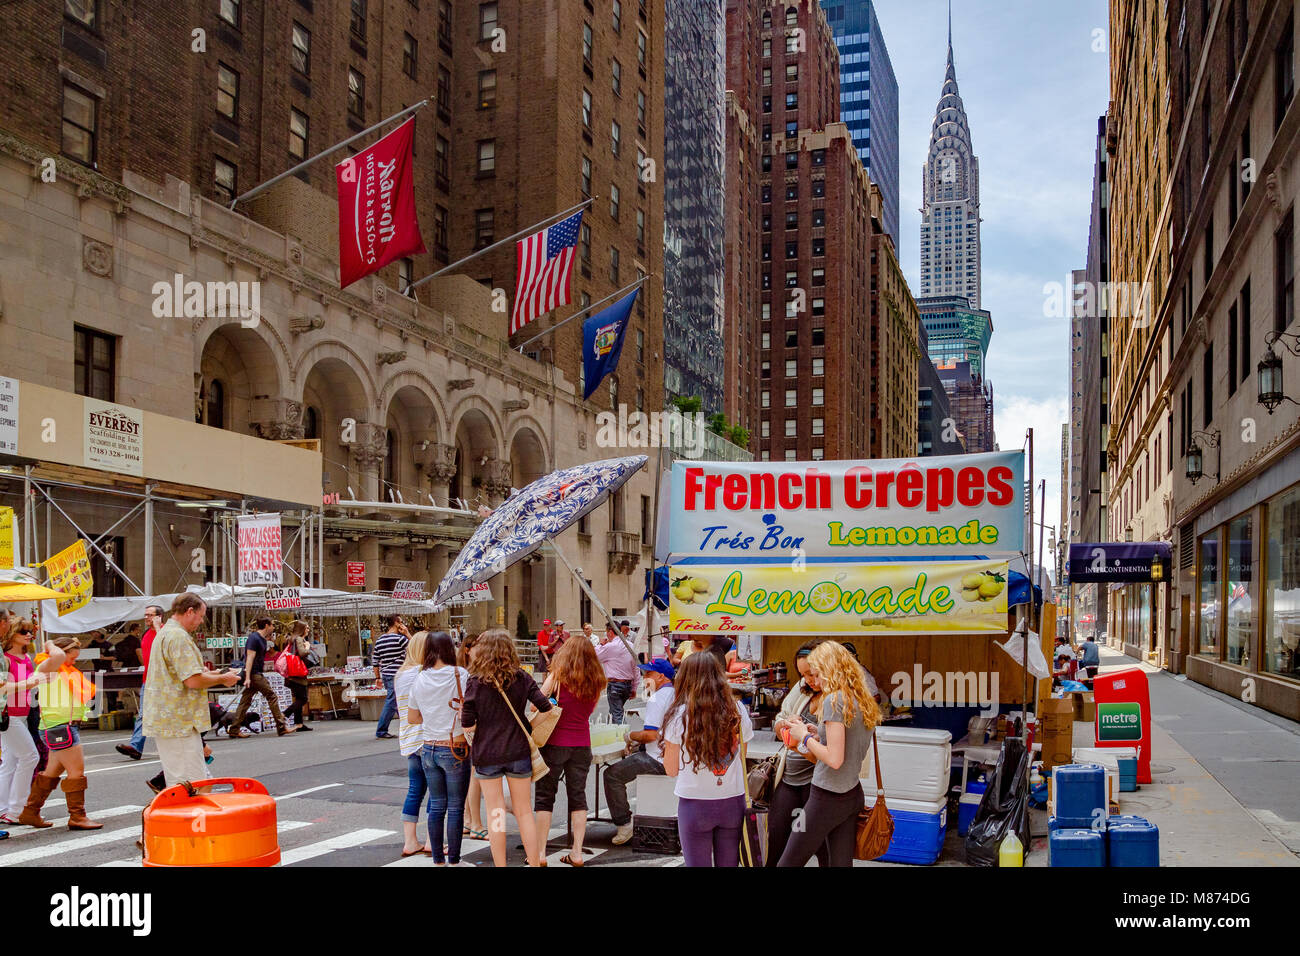 Les gens qui achètent des crêpes français à un marché le dimanche sur Lexington Avenue avec le Chrysler Building au loin, Manhattan, New York City Banque D'Images